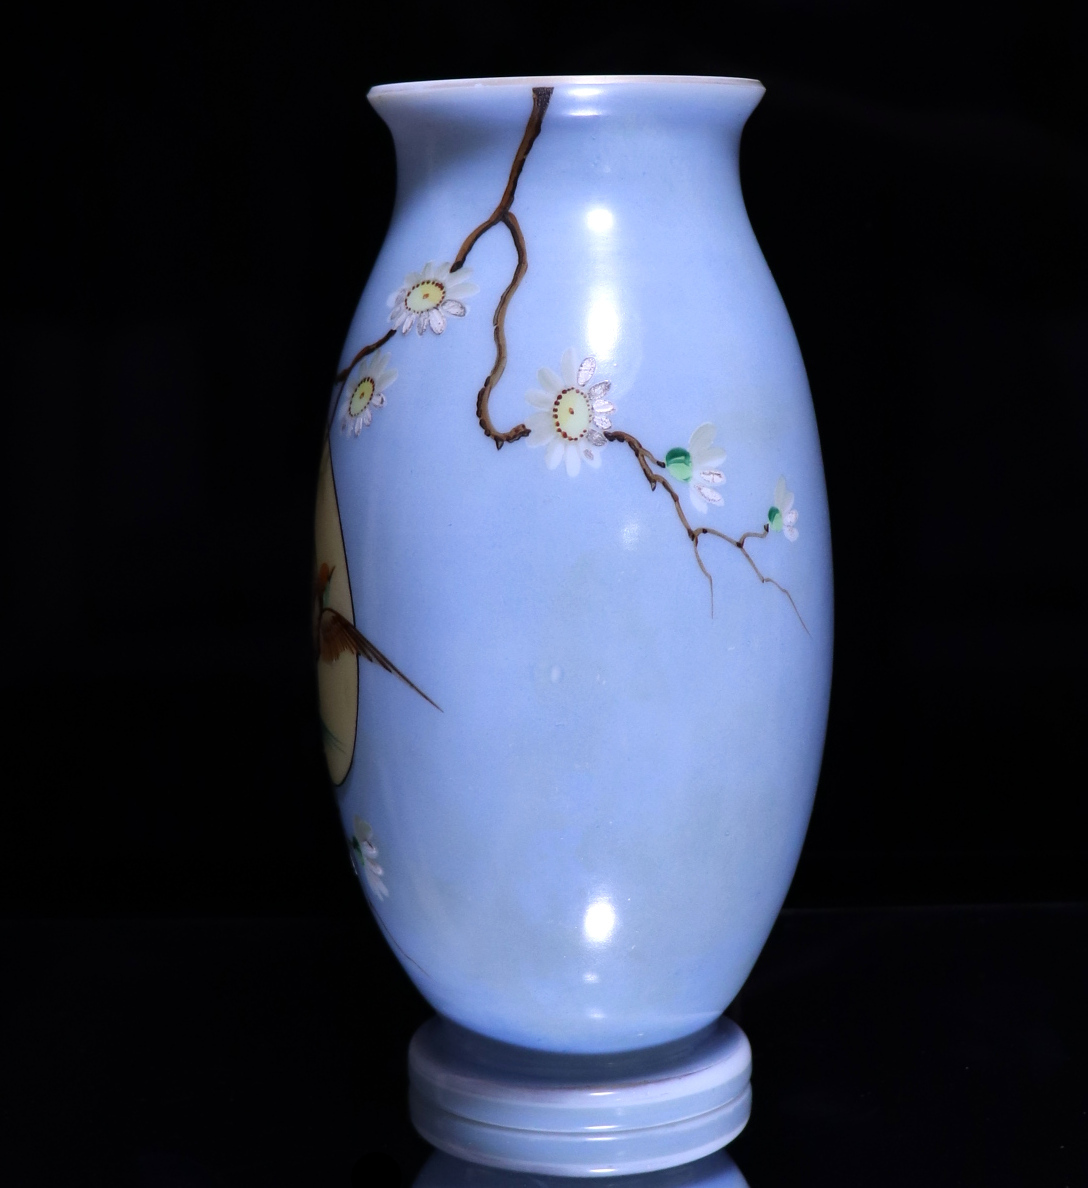 オールド・バカラ (BACCARAT) 日本趣味 レアカラー オパーリンクリスタル製 大型花瓶 ライトブルー 壺 アンティーク ジャポニスム セーブル_画像4